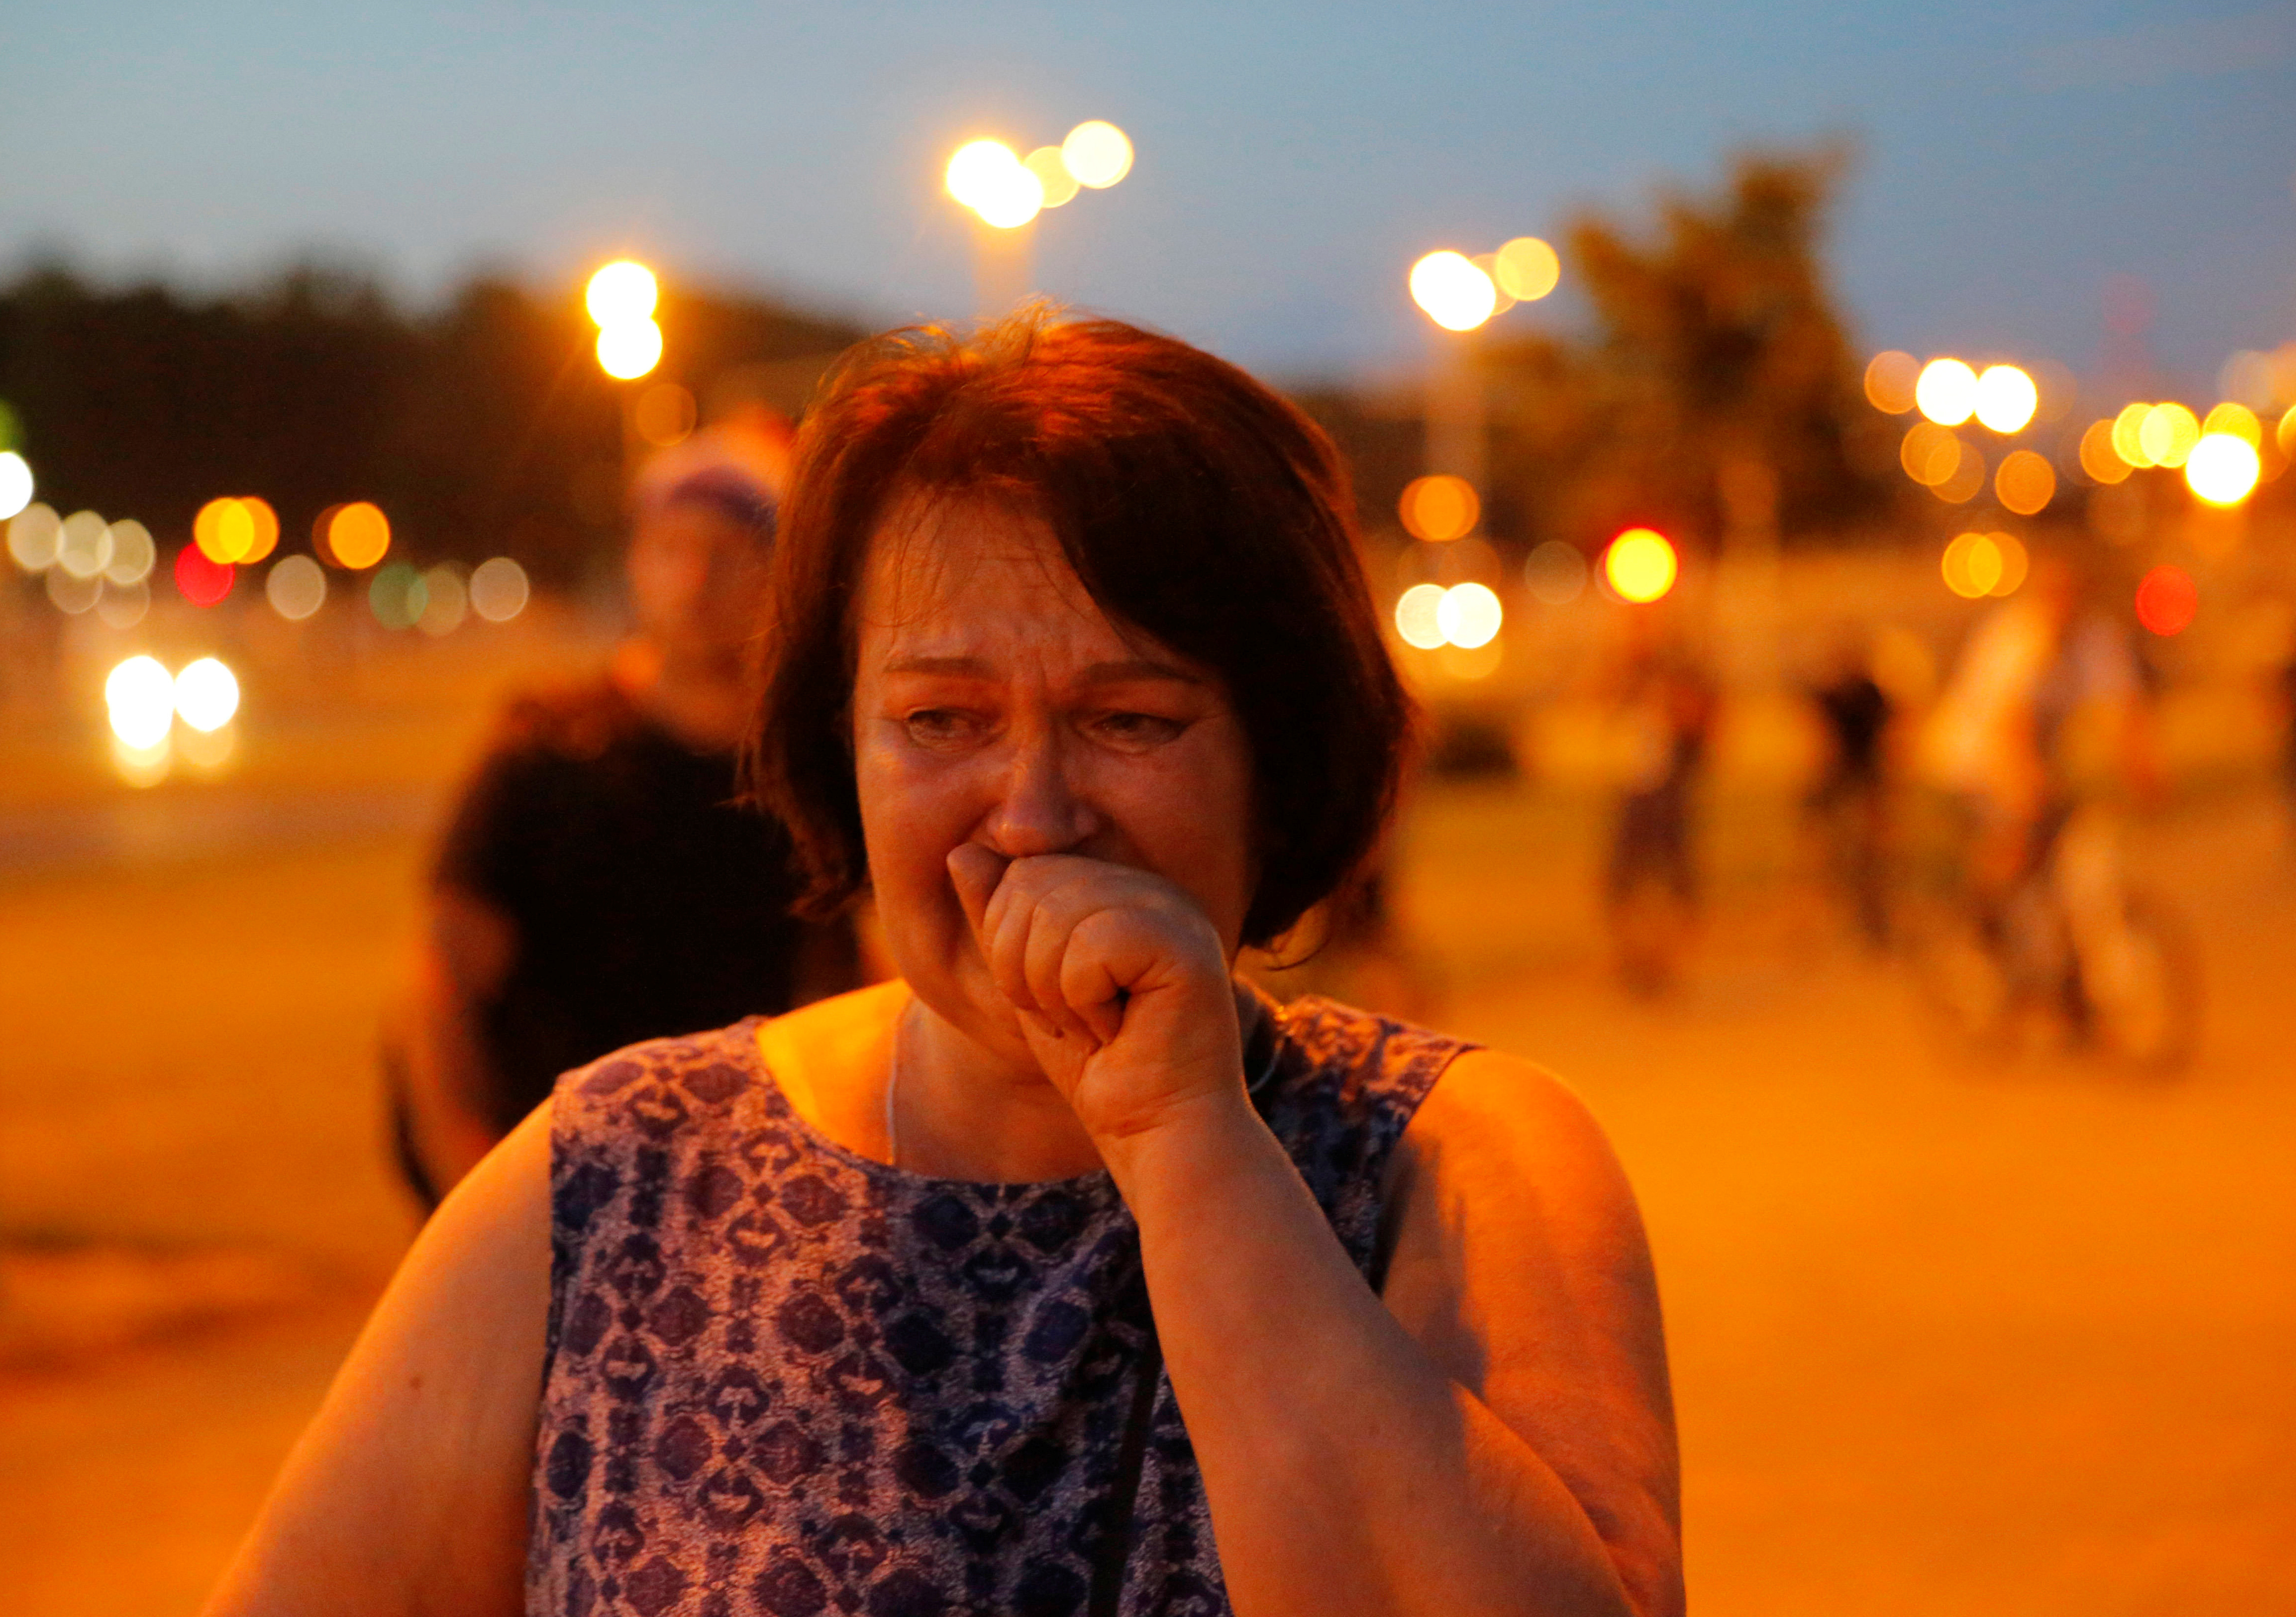 Una mujer llora durante los choques entre manifestantes y policía en Minsk (REUTERS/Vasily Fedosenko)